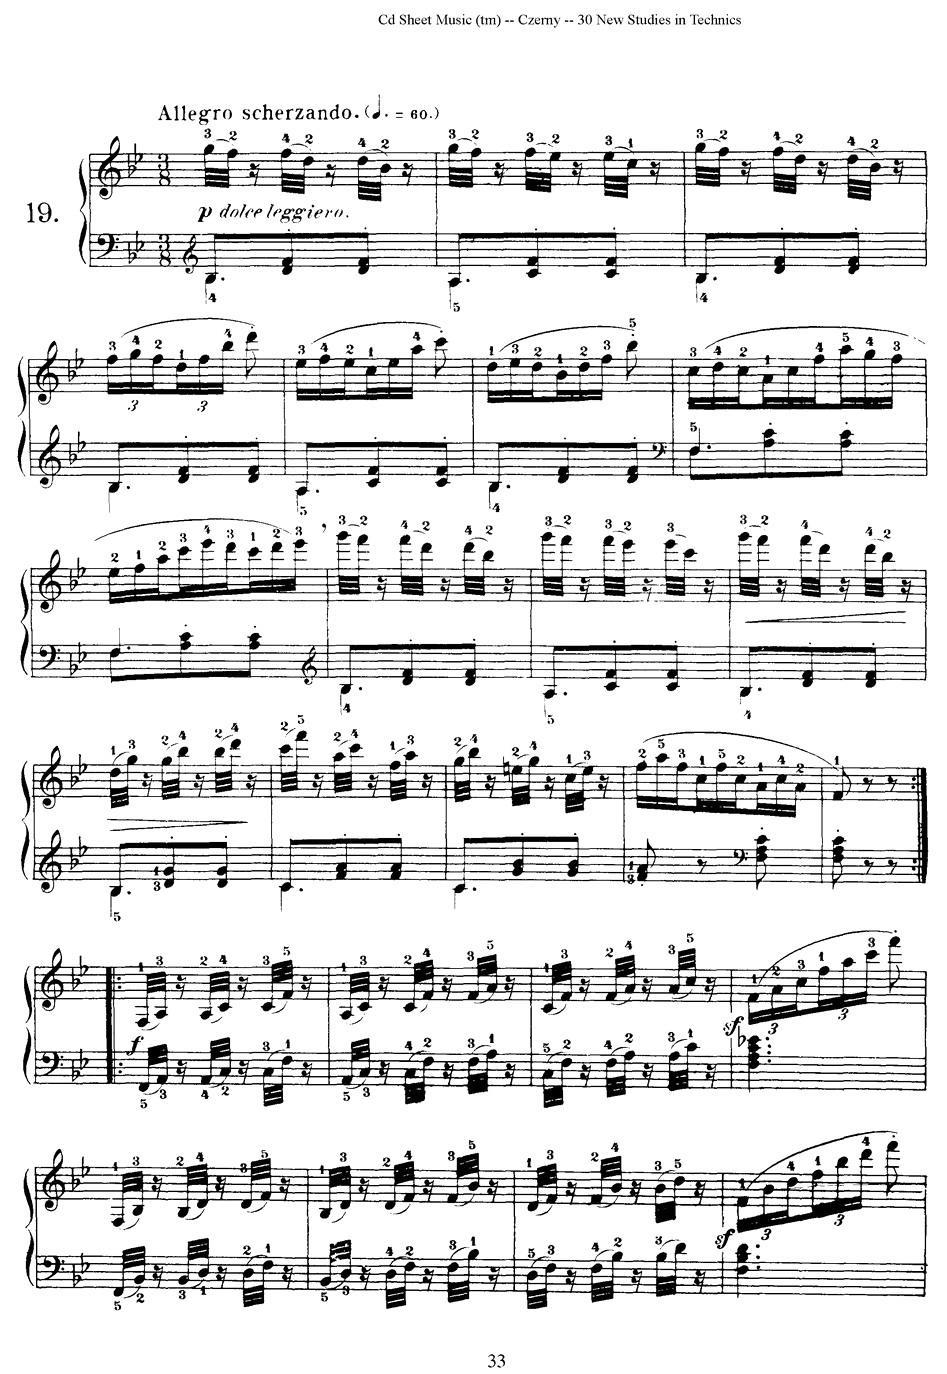 Czerny - 30 New Studies - 19（车尔尼Op849 - 30首练习曲）(1).jpg